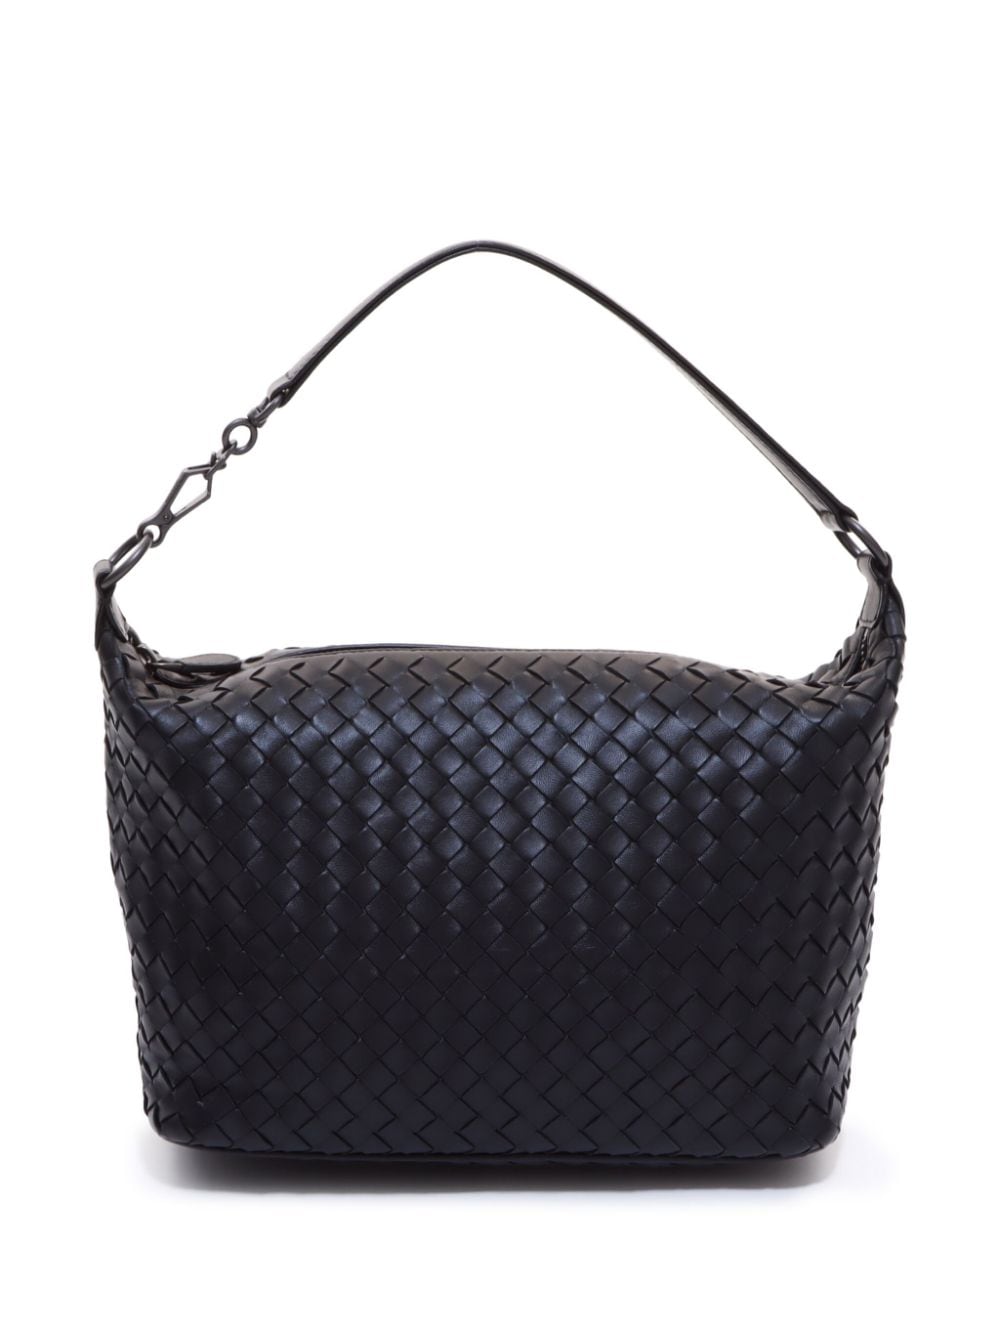 Pre-owned Bottega Veneta Intrecciato Zipped Handbag In Black